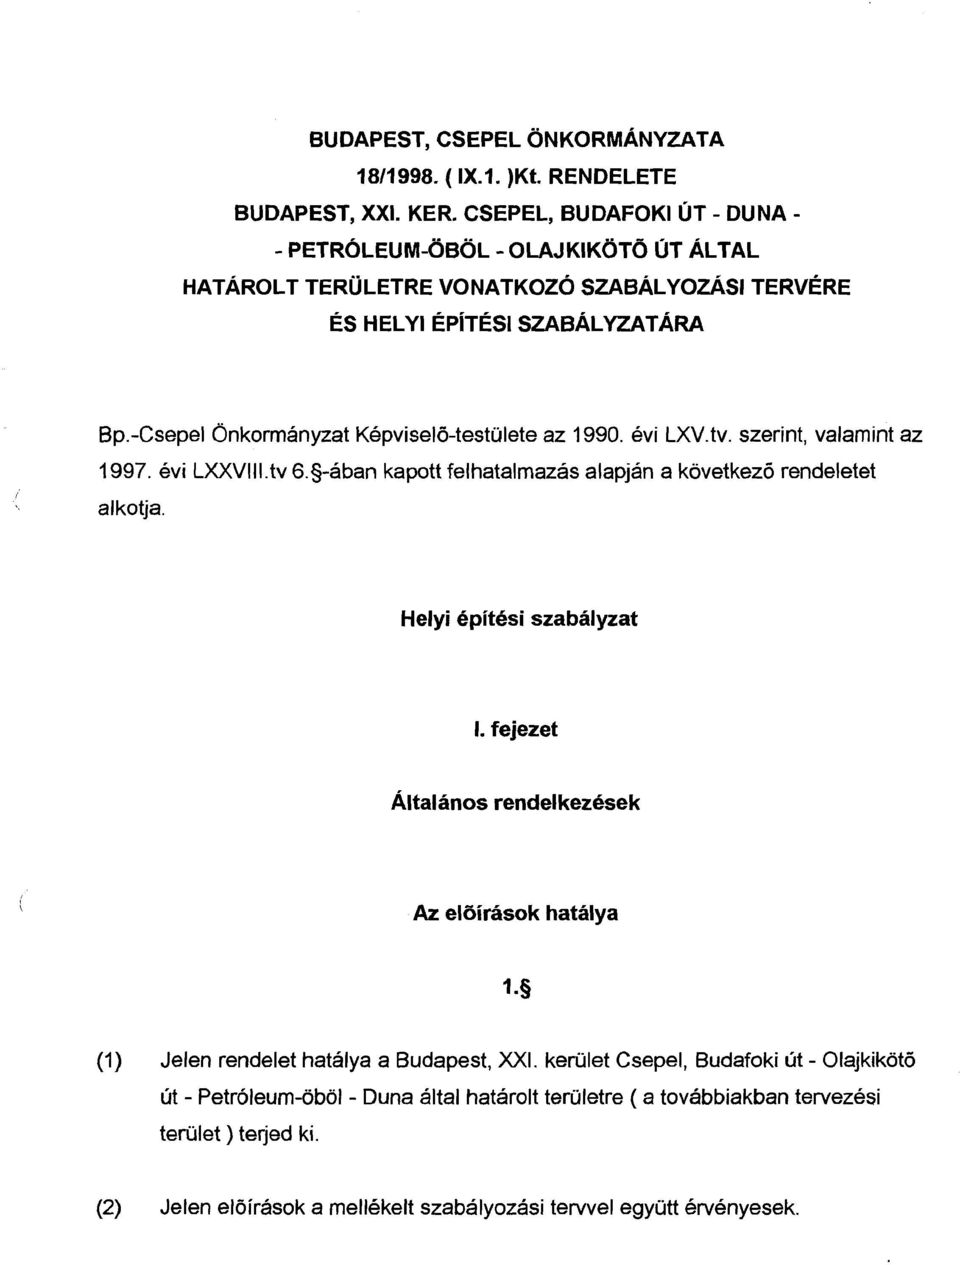 -Csepel Onkormanyzat Kepvisel6-testulete az 1990. evi LXV.tv. szerint, valamint az 1 997. evi LXXVl l I. tv 6.s-aban kapott felhatalmazas alapjan a kovetkez6 rendeletet alkotja.